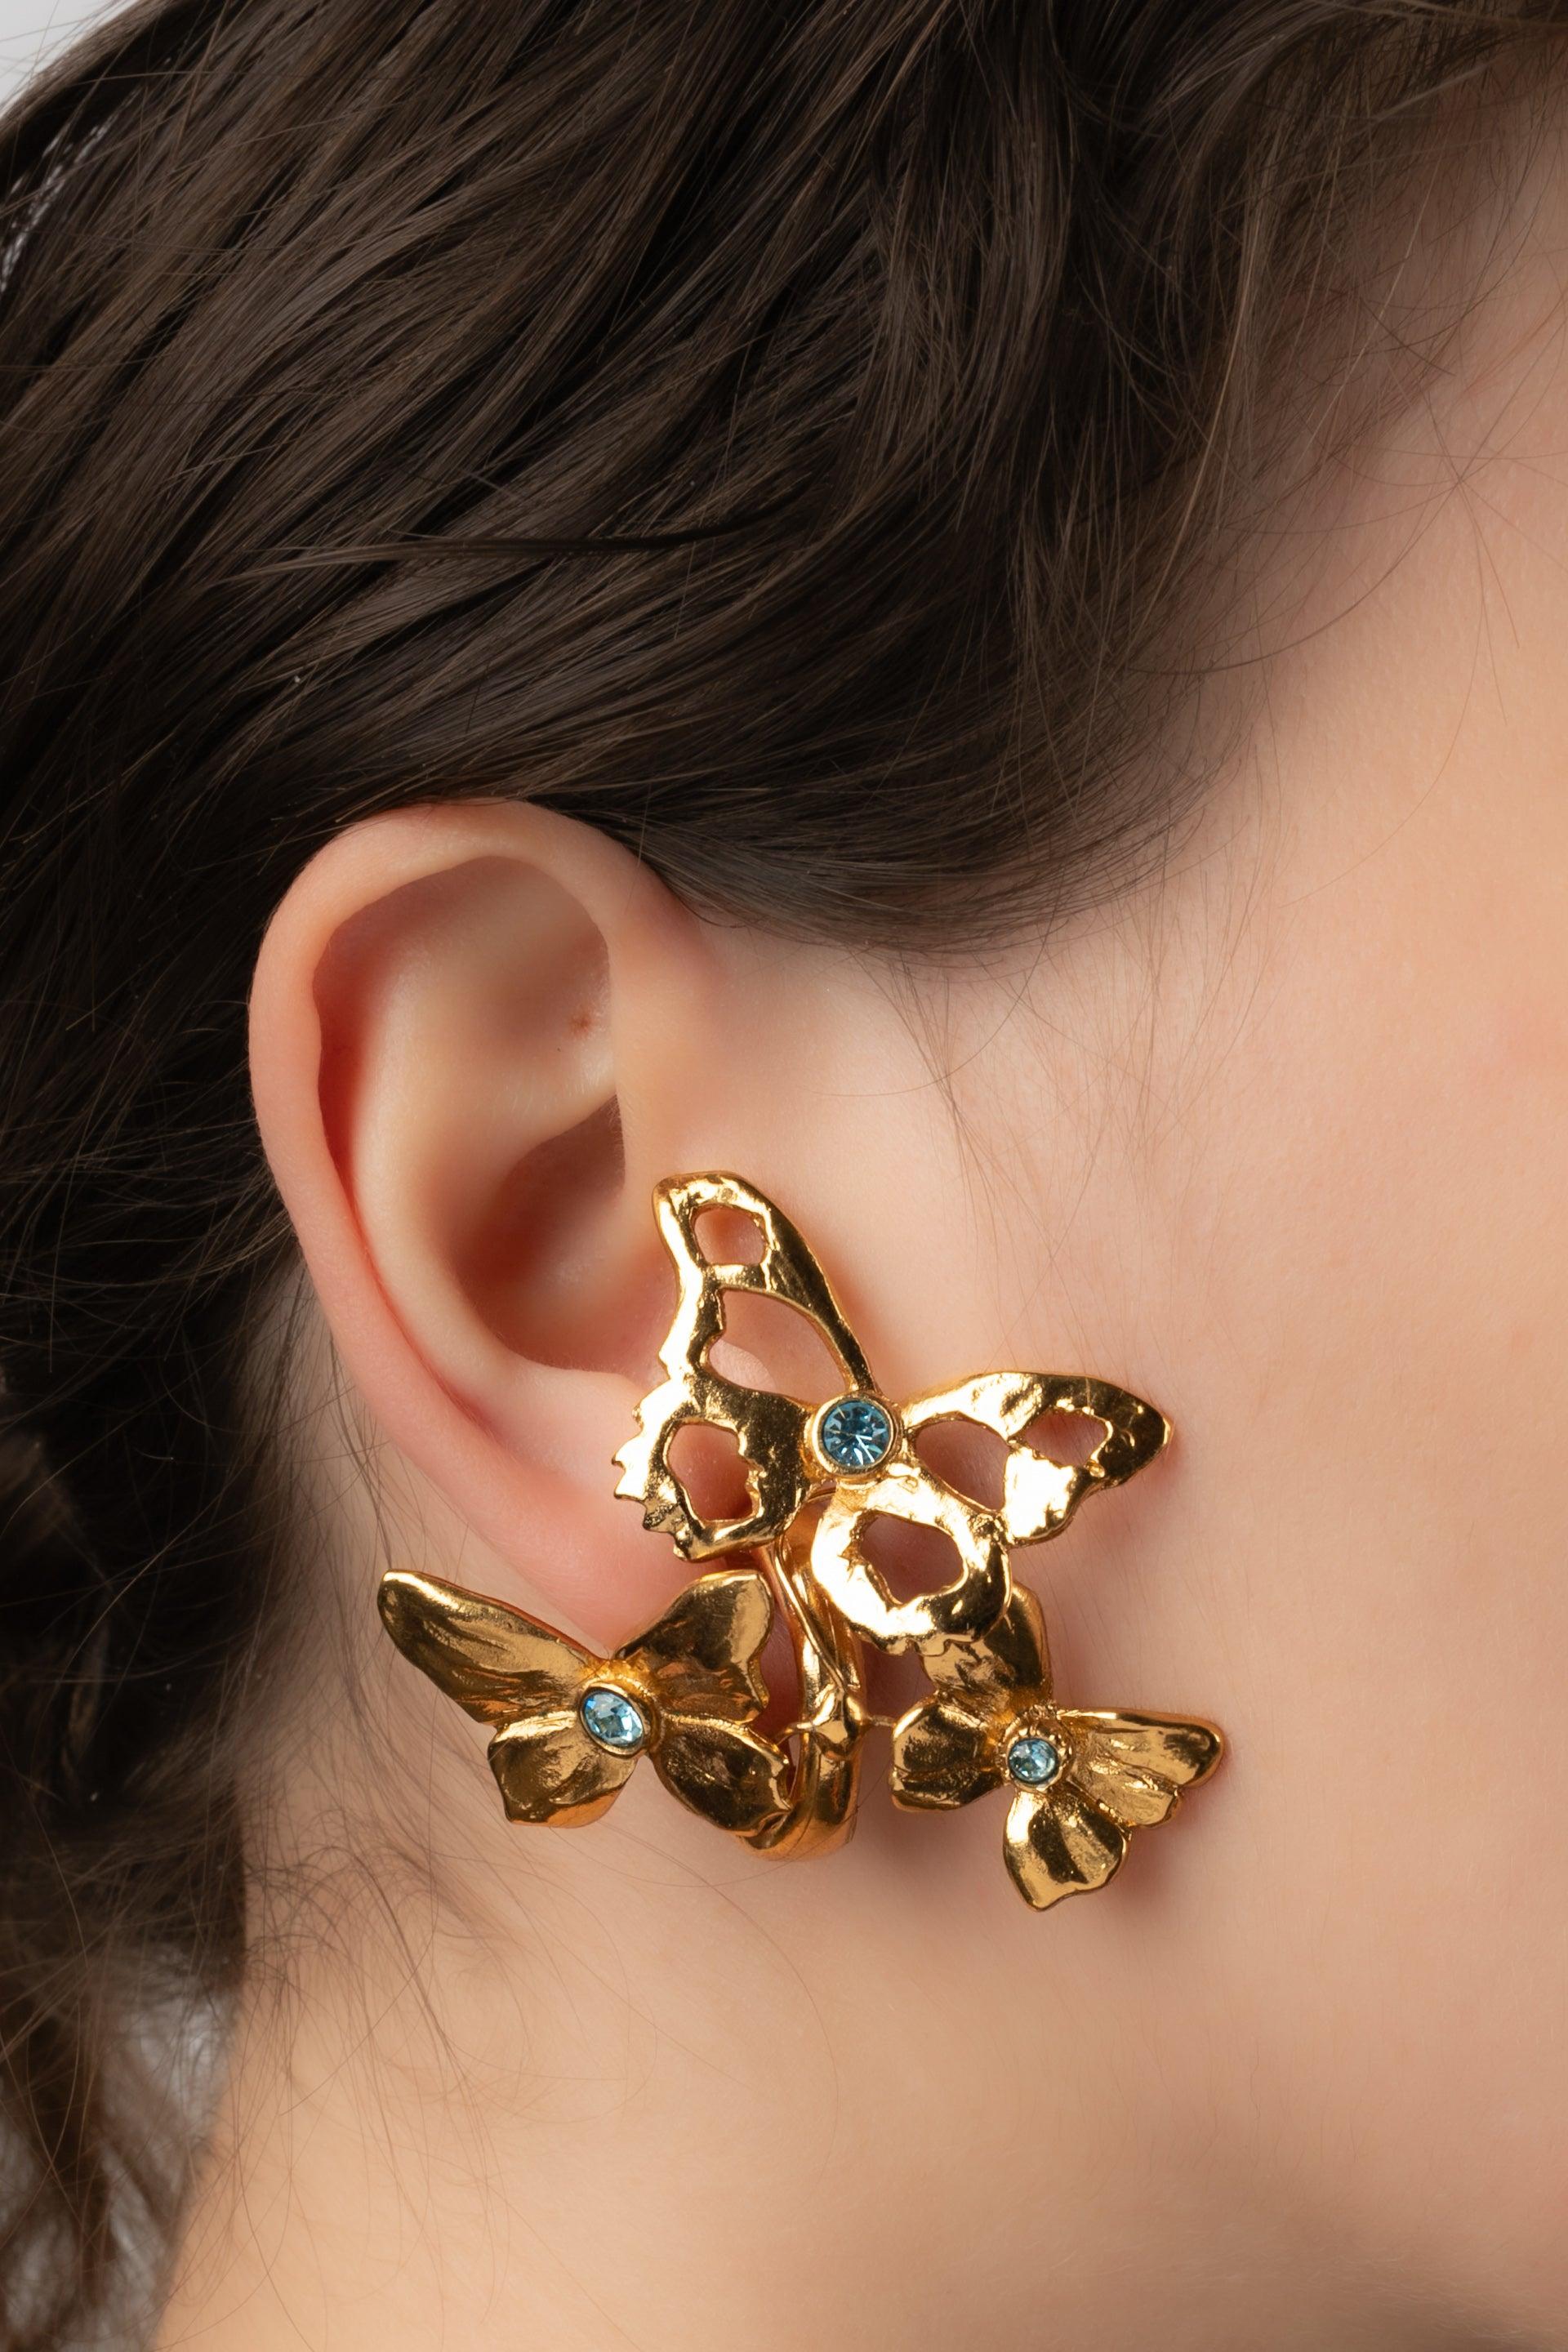 Yves Saint Laurent - (Made in France) Goldene Ohrringe aus Metall mit blauen Strasssteinen.

Zusätzliche Informationen:
Zustand: Sehr guter Zustand
Abmessungen: Höhe: 4 cm

Sellers Referenz: BO67